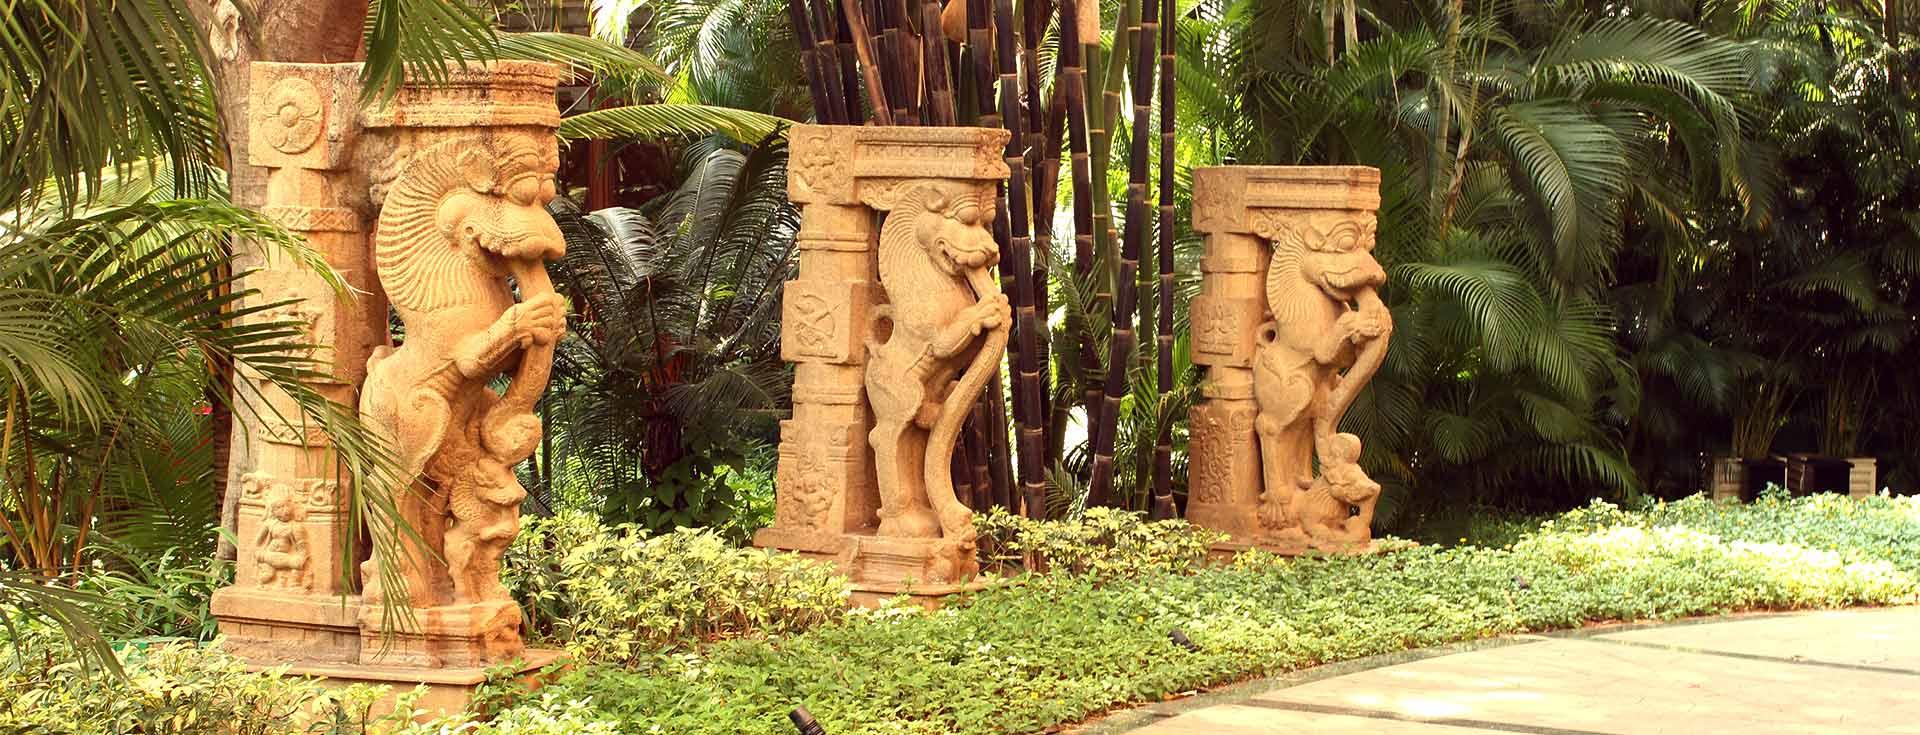 Art - The Leela Palace Bengaluru